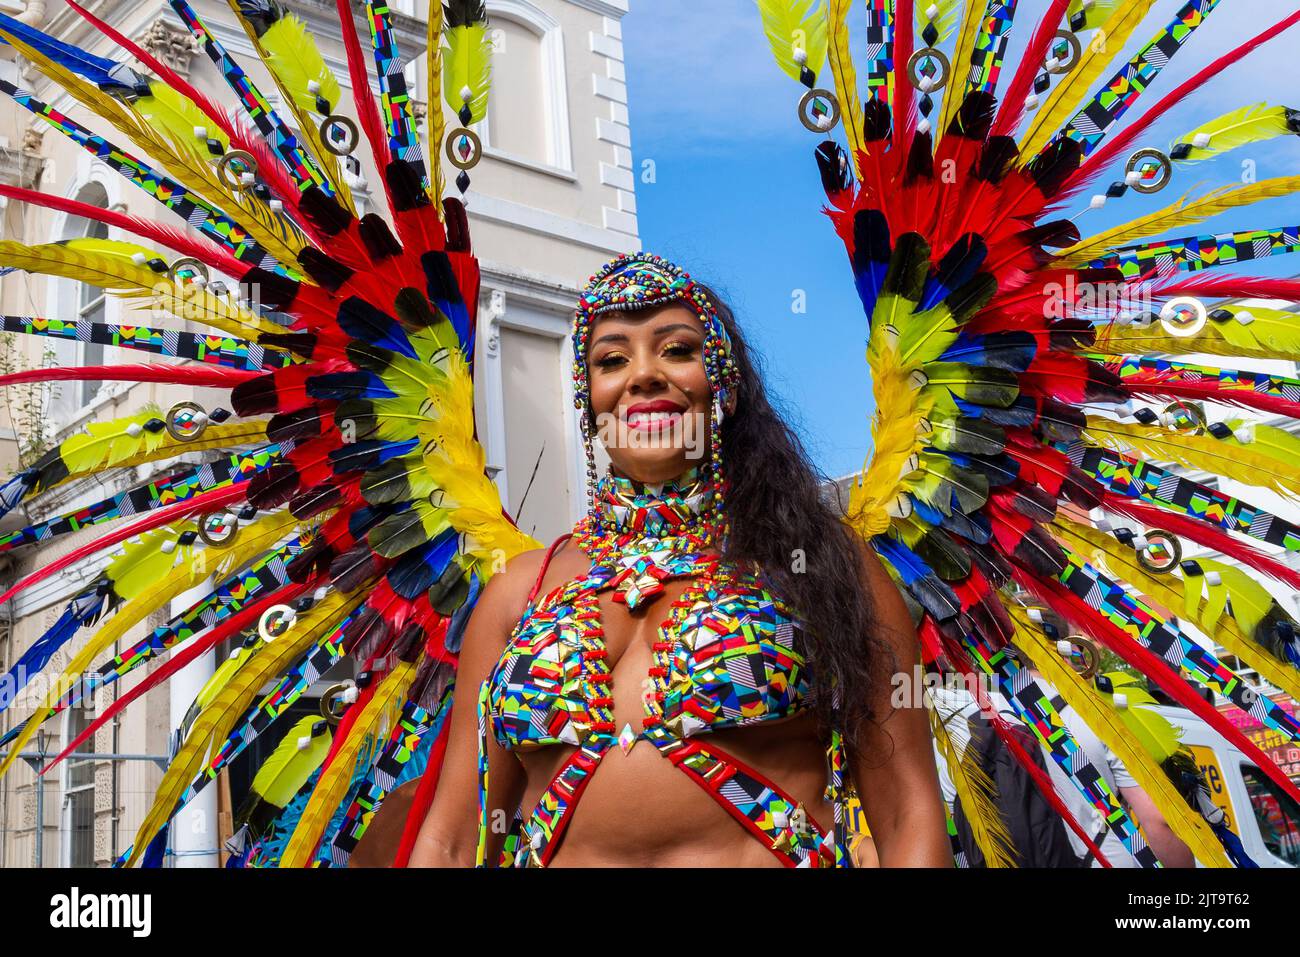 Notting Hill, Londres, Royaume-Uni. 29th août 2022. Le plus grand festival de rue d'Europe est revenu dans les rues de Notting Hill après les années annulées en raison de la pandémie de Covid. Des danseurs exotiques et des groupes musicaux sur le thème jamaïcain défileront dans les rues, avec de la nourriture et des divertissements dans la rue autour de la région, ajoutant à l'événement. Le Grand Parade a lieu le lundi des fêtes de la Banque comme point culminant du festival de trois jours qui a commencé en 1966. Les participants se rassemblent à proximité dans leurs costumes colorés. Femme en robe-tête ornée de plumes aux couleurs vives Banque D'Images